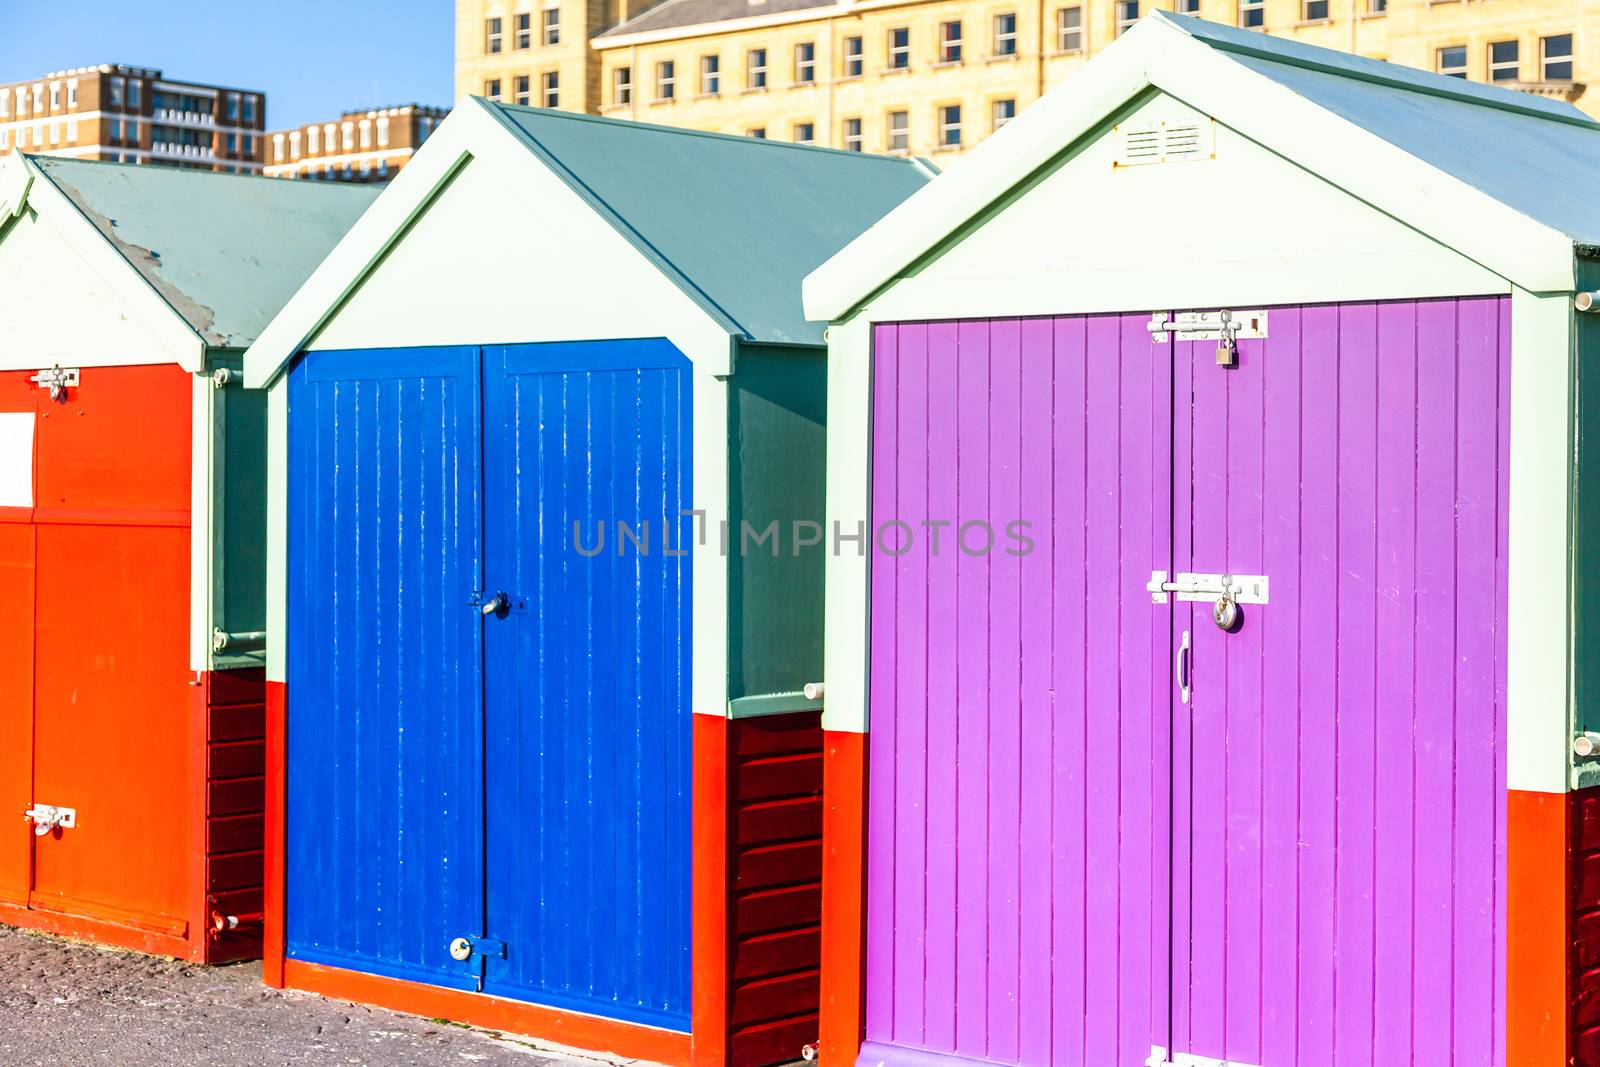 Colorful Brighton beach huts by magann